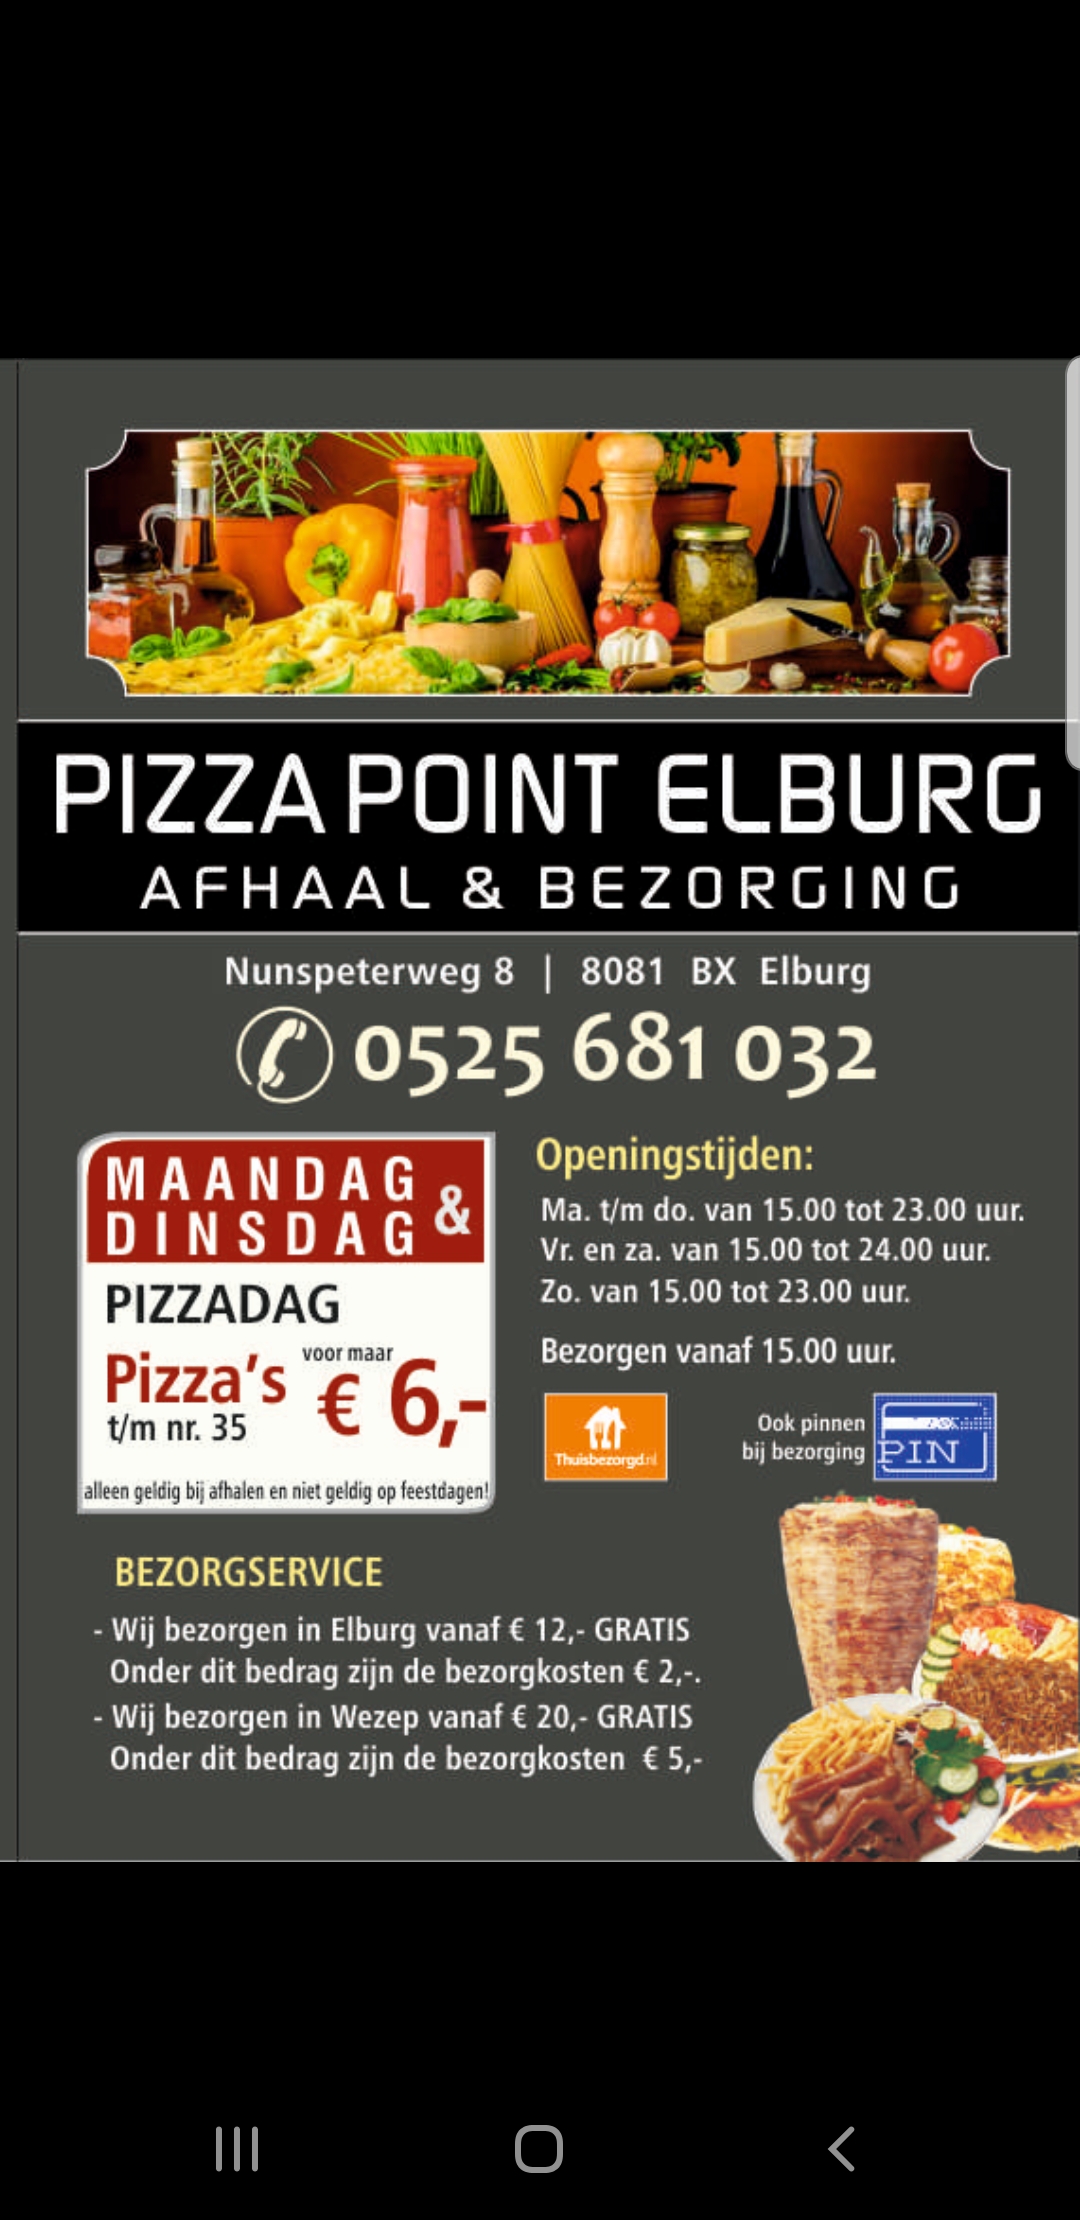 Pizzapoint Elburg - Eet.nu